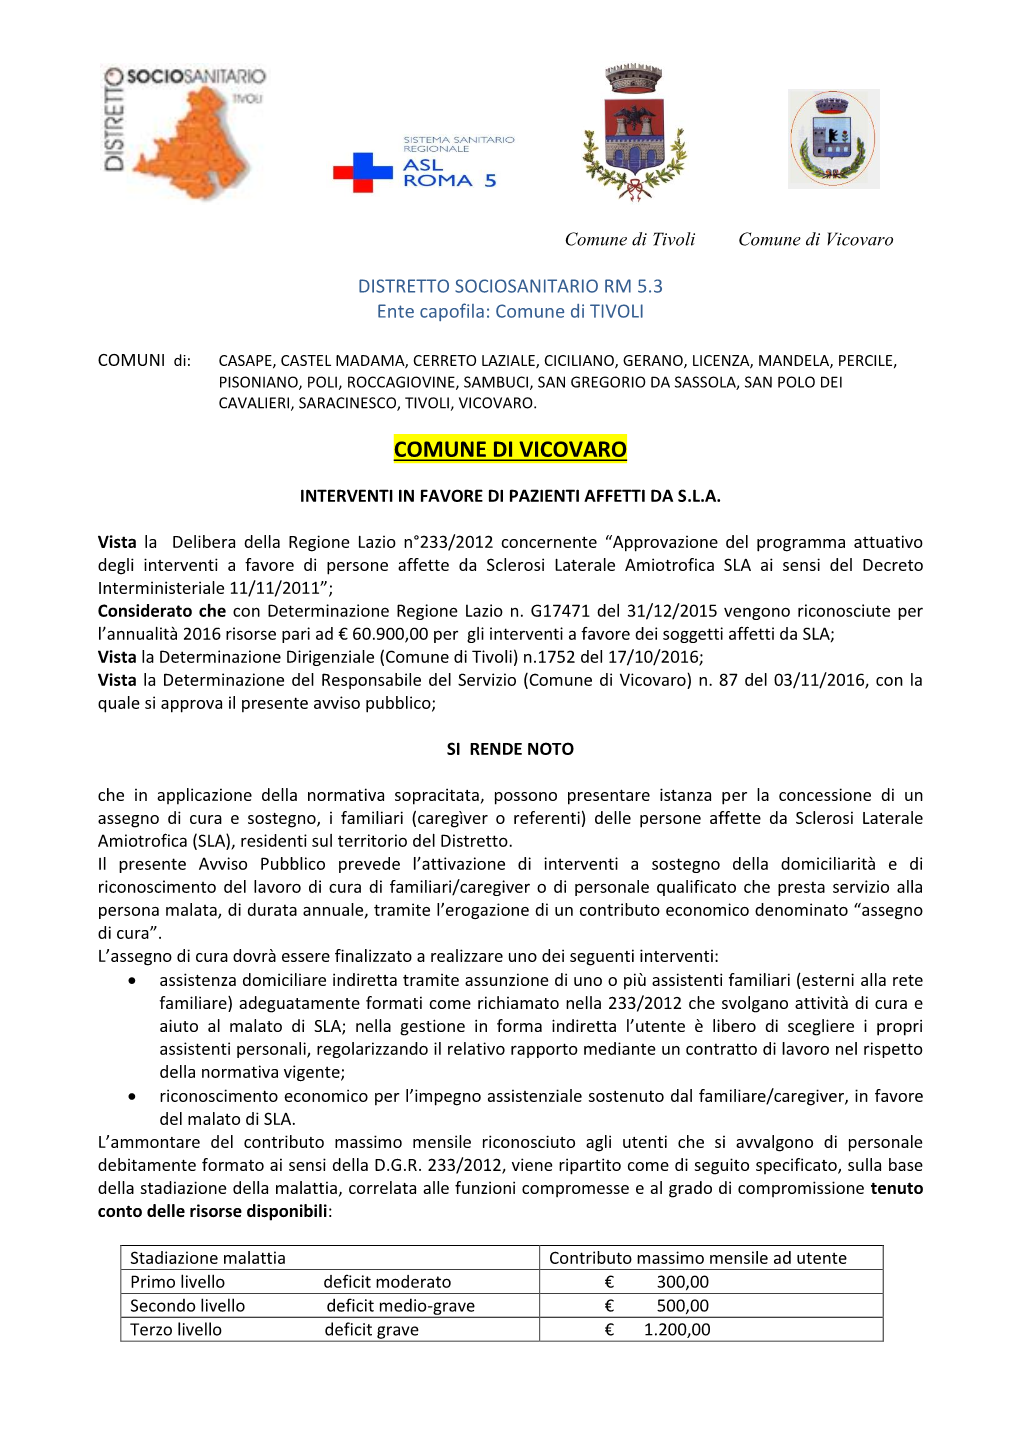 SLA Ai Sensi Del Decreto Interministeriale 11/11/2011”; Considerato Che Con Determinazione Regione Lazio N